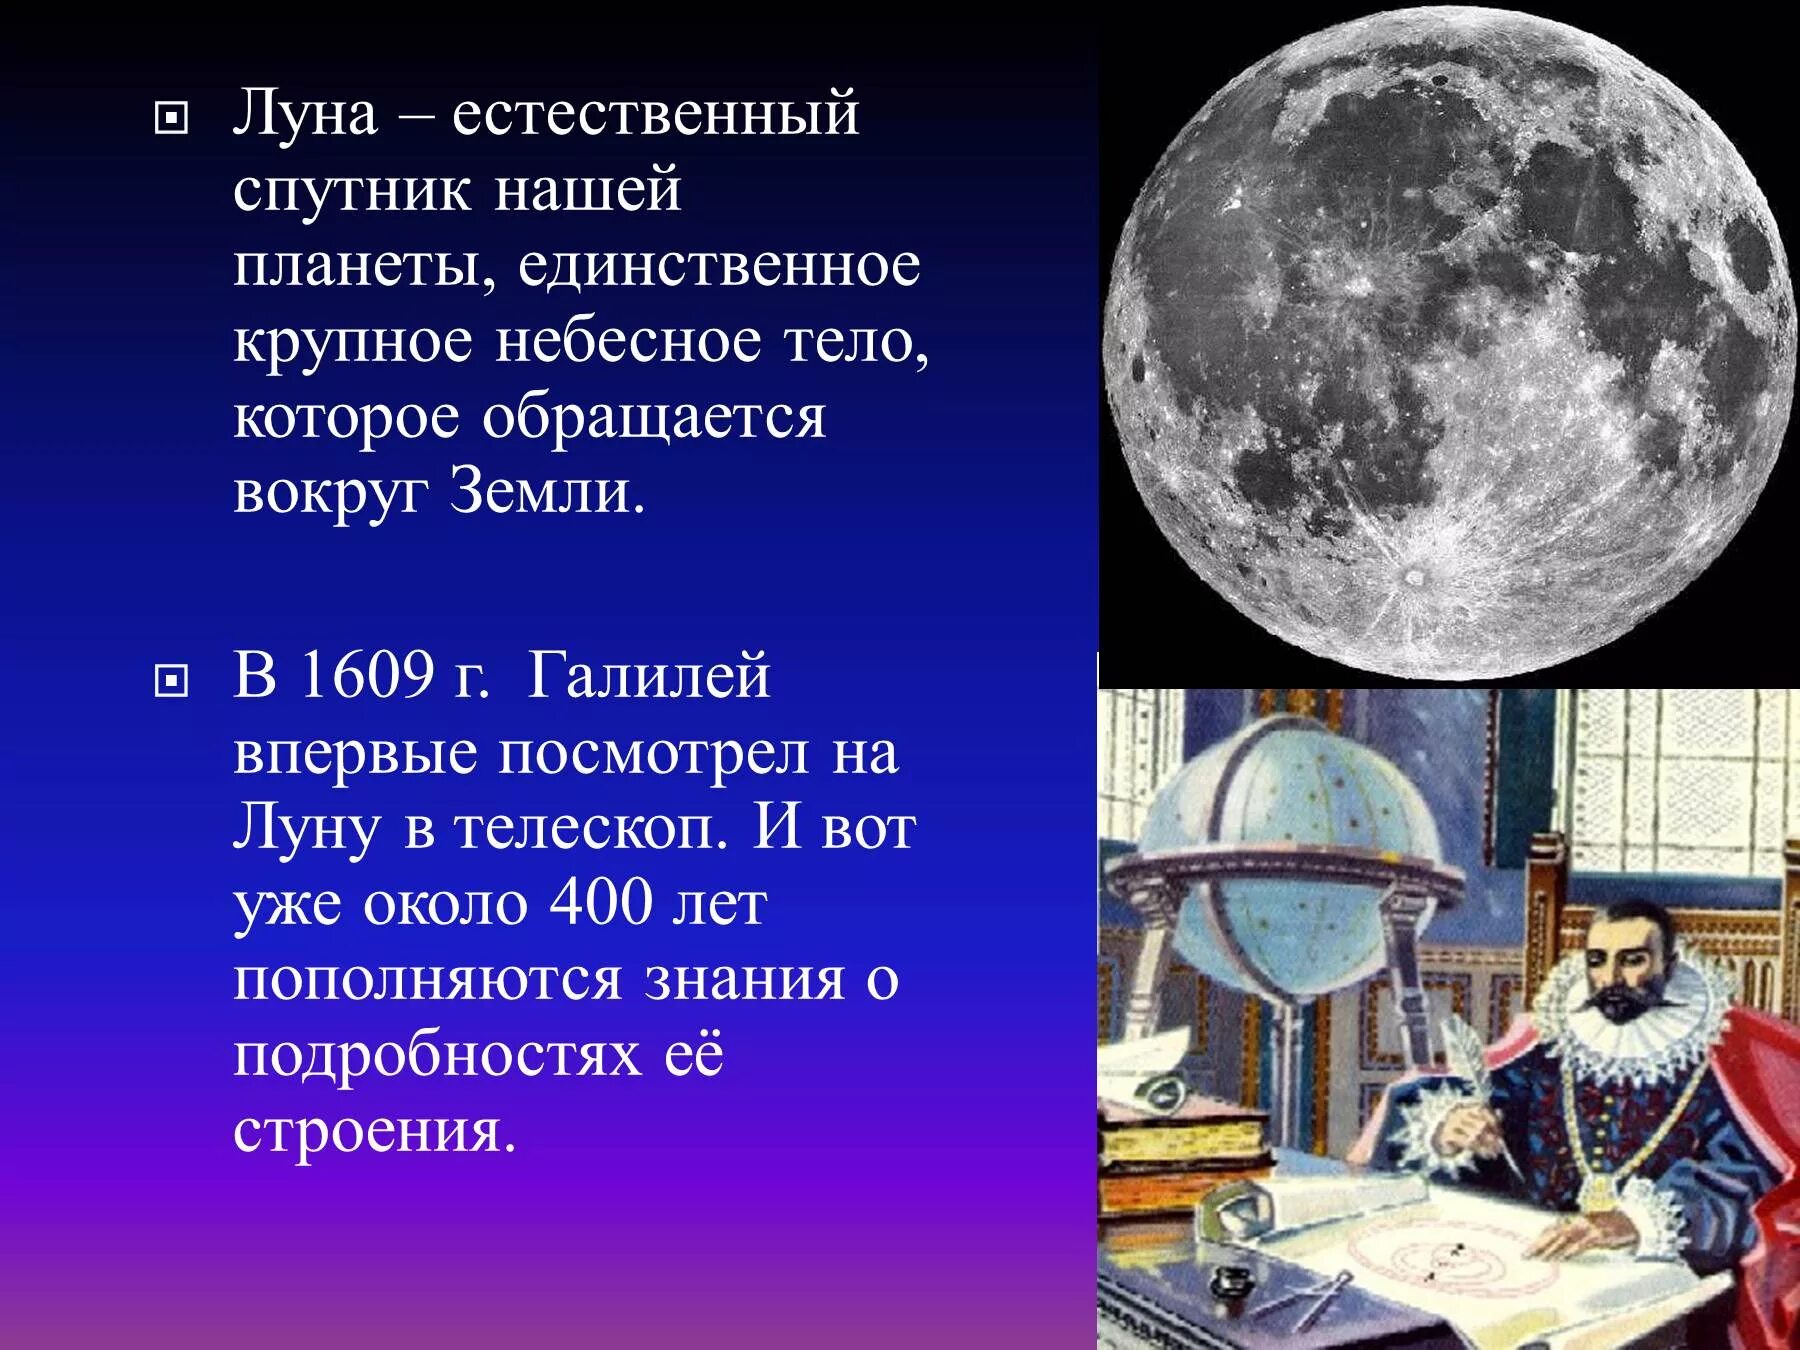 Луна краткий рассказ. Луна естественный Спутник земли. Луна для презентации. Общие сведения о Луне. Луна единственный естественный Спутник нашей планеты.